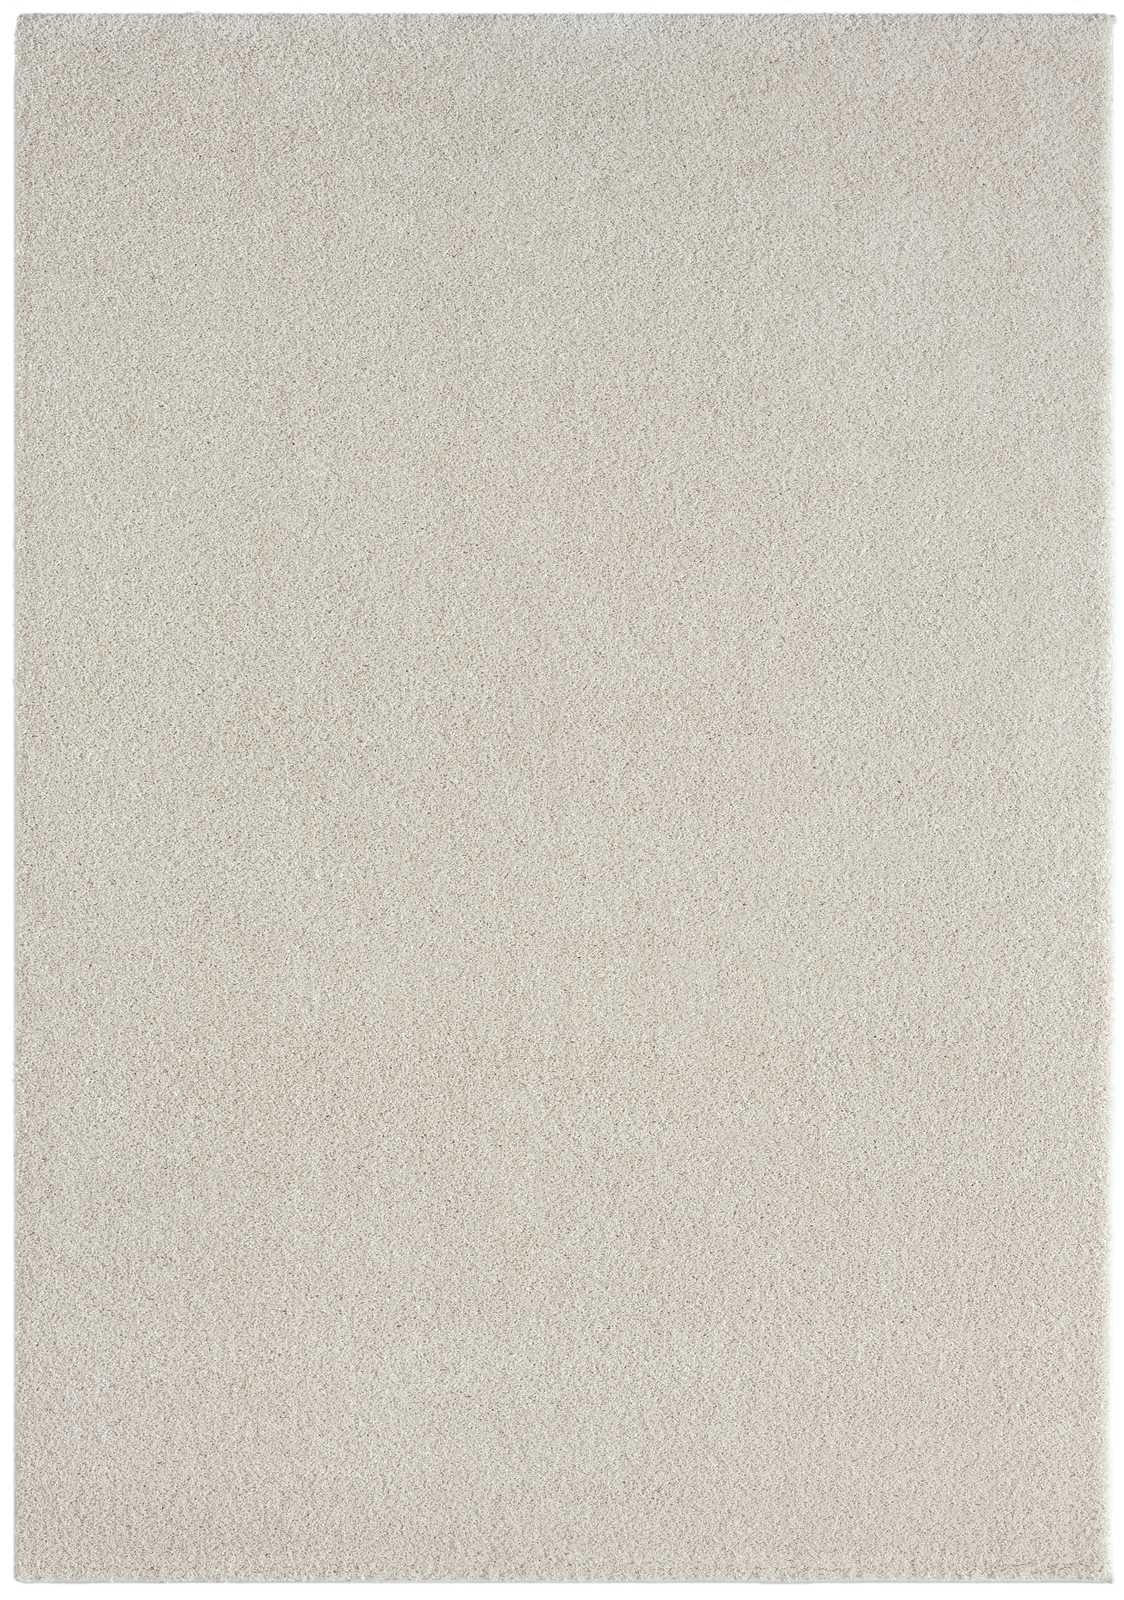             Cremefarbener Kurzflor Teppich – 230 x 160 cm
        